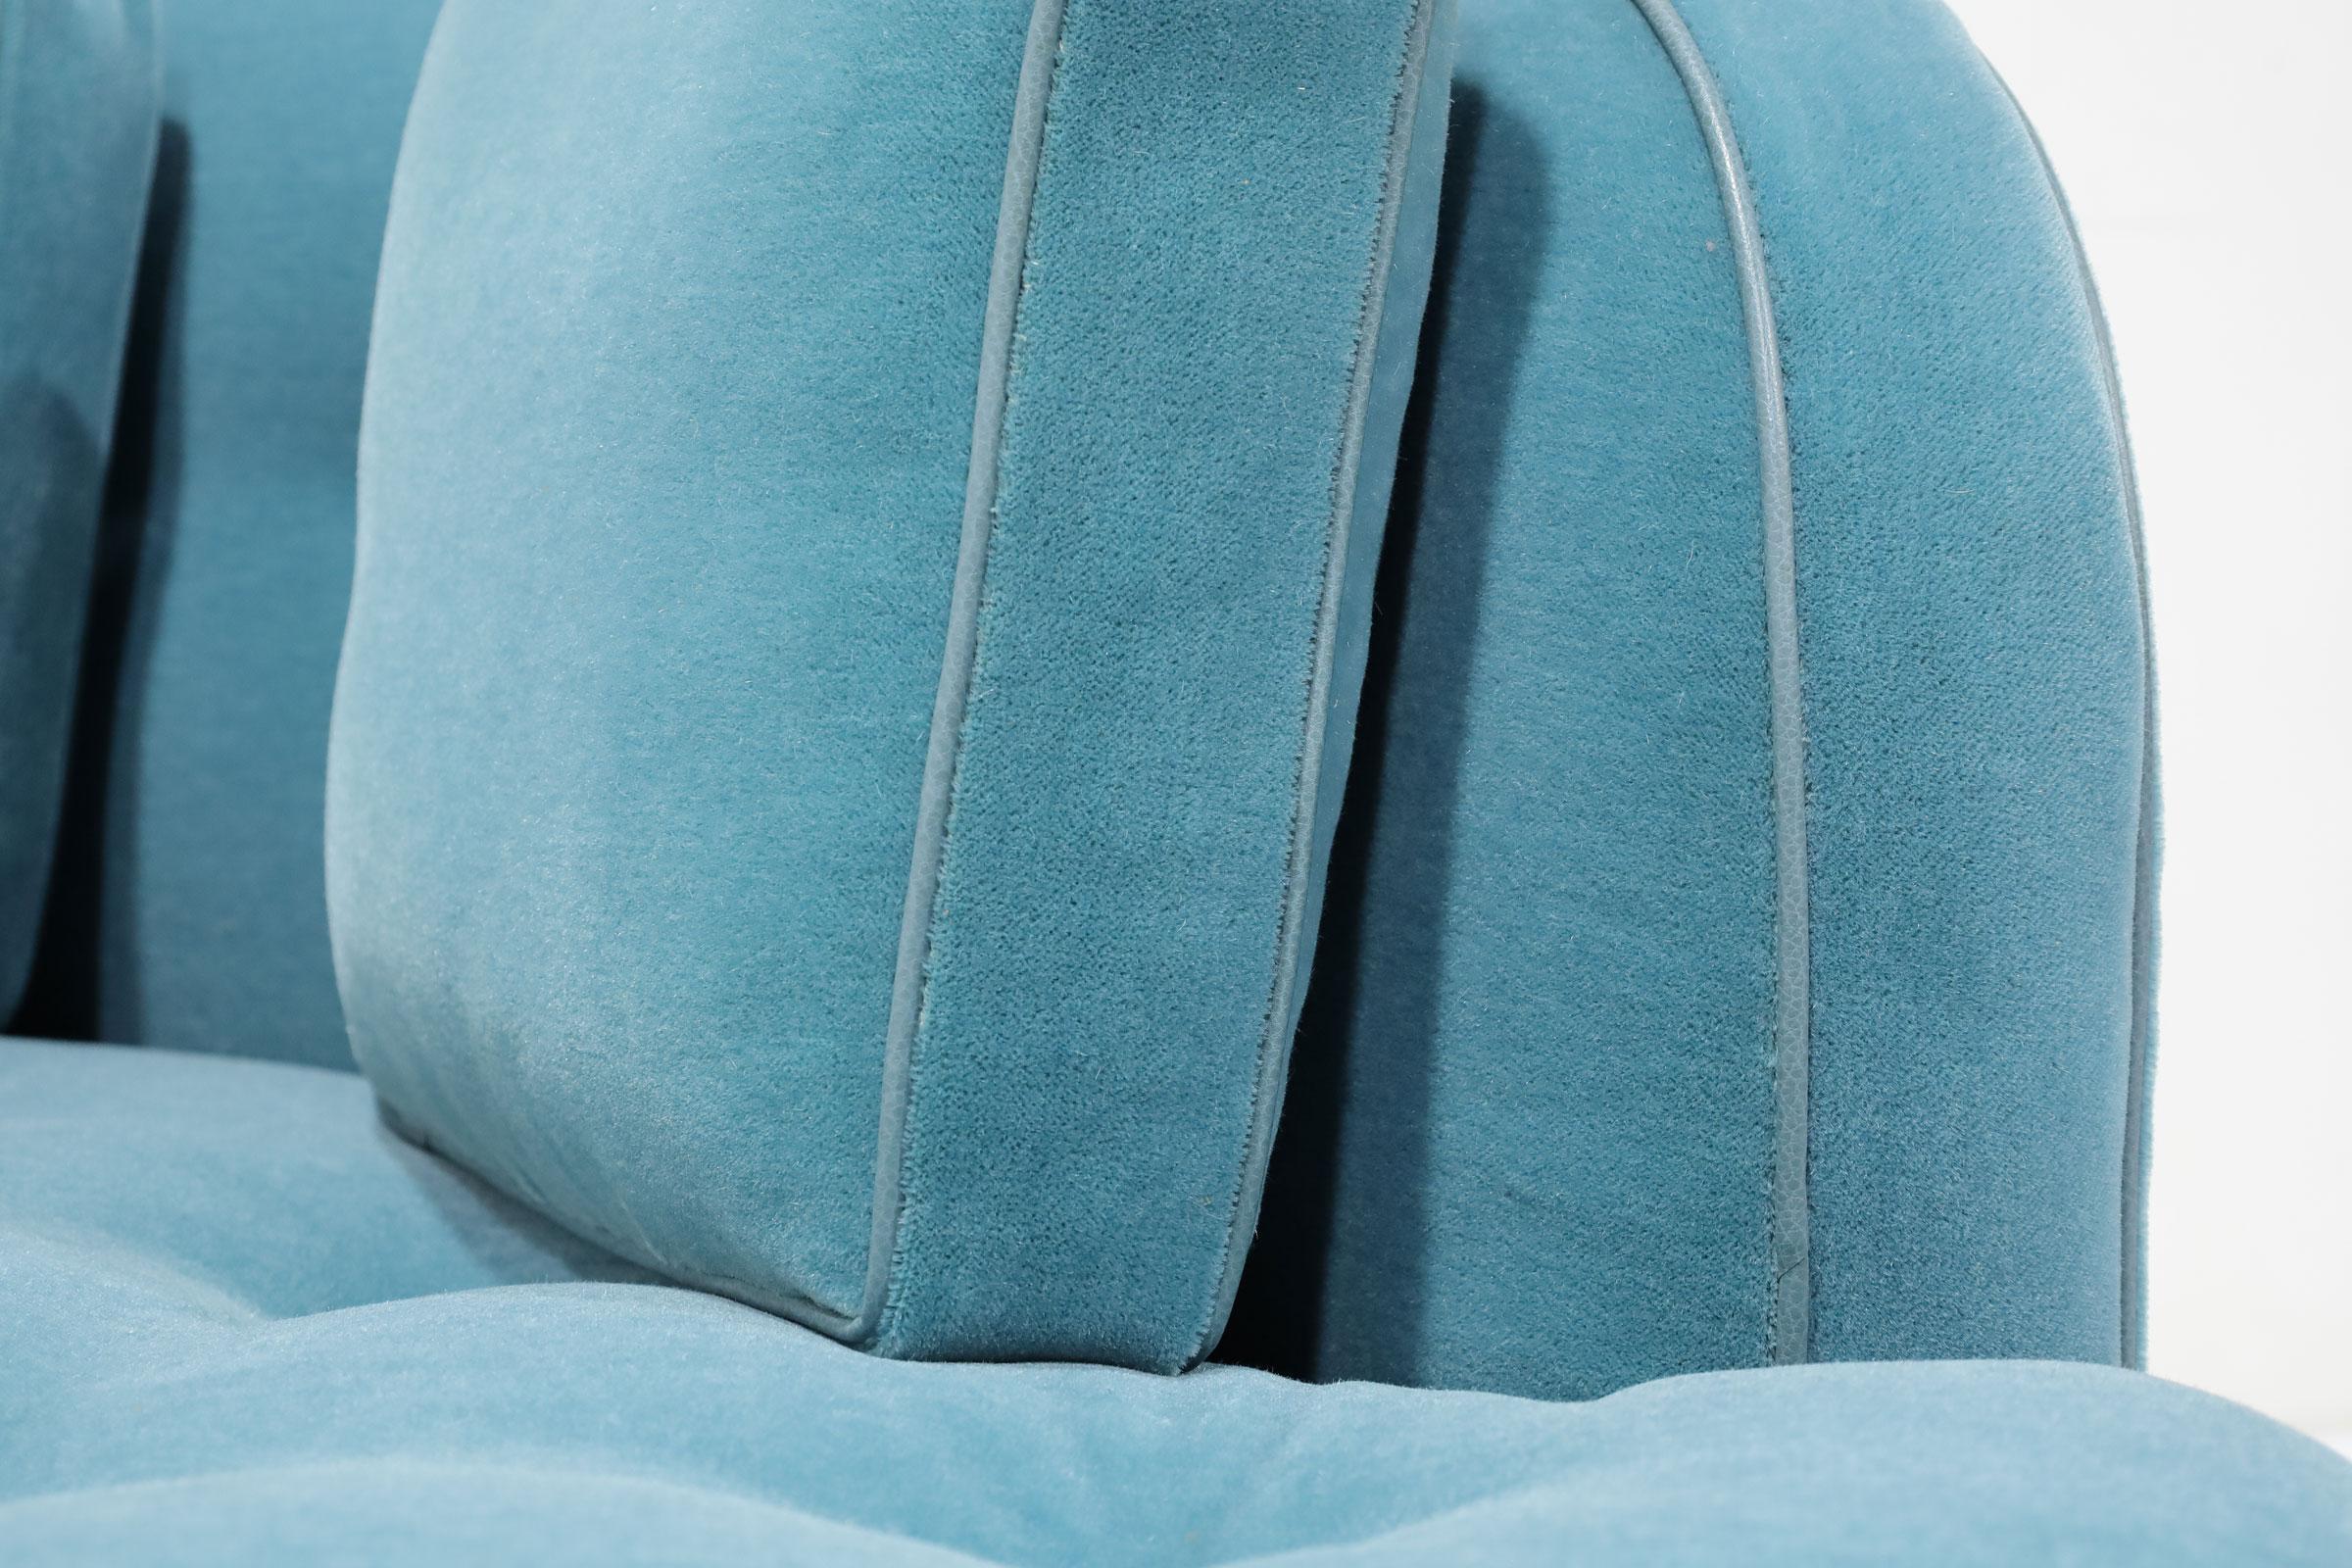 So ein klassisches Sofa und so schön. Wir haben diese Schönheit mit wunderschönem blauen Mohair aufgepeppt und mit Paspeln versehen, um die Kanten besser zu definieren. Das Sofa verfügt über einen restaurierten Mahagoni-Sockel und 4 Kissen für mehr